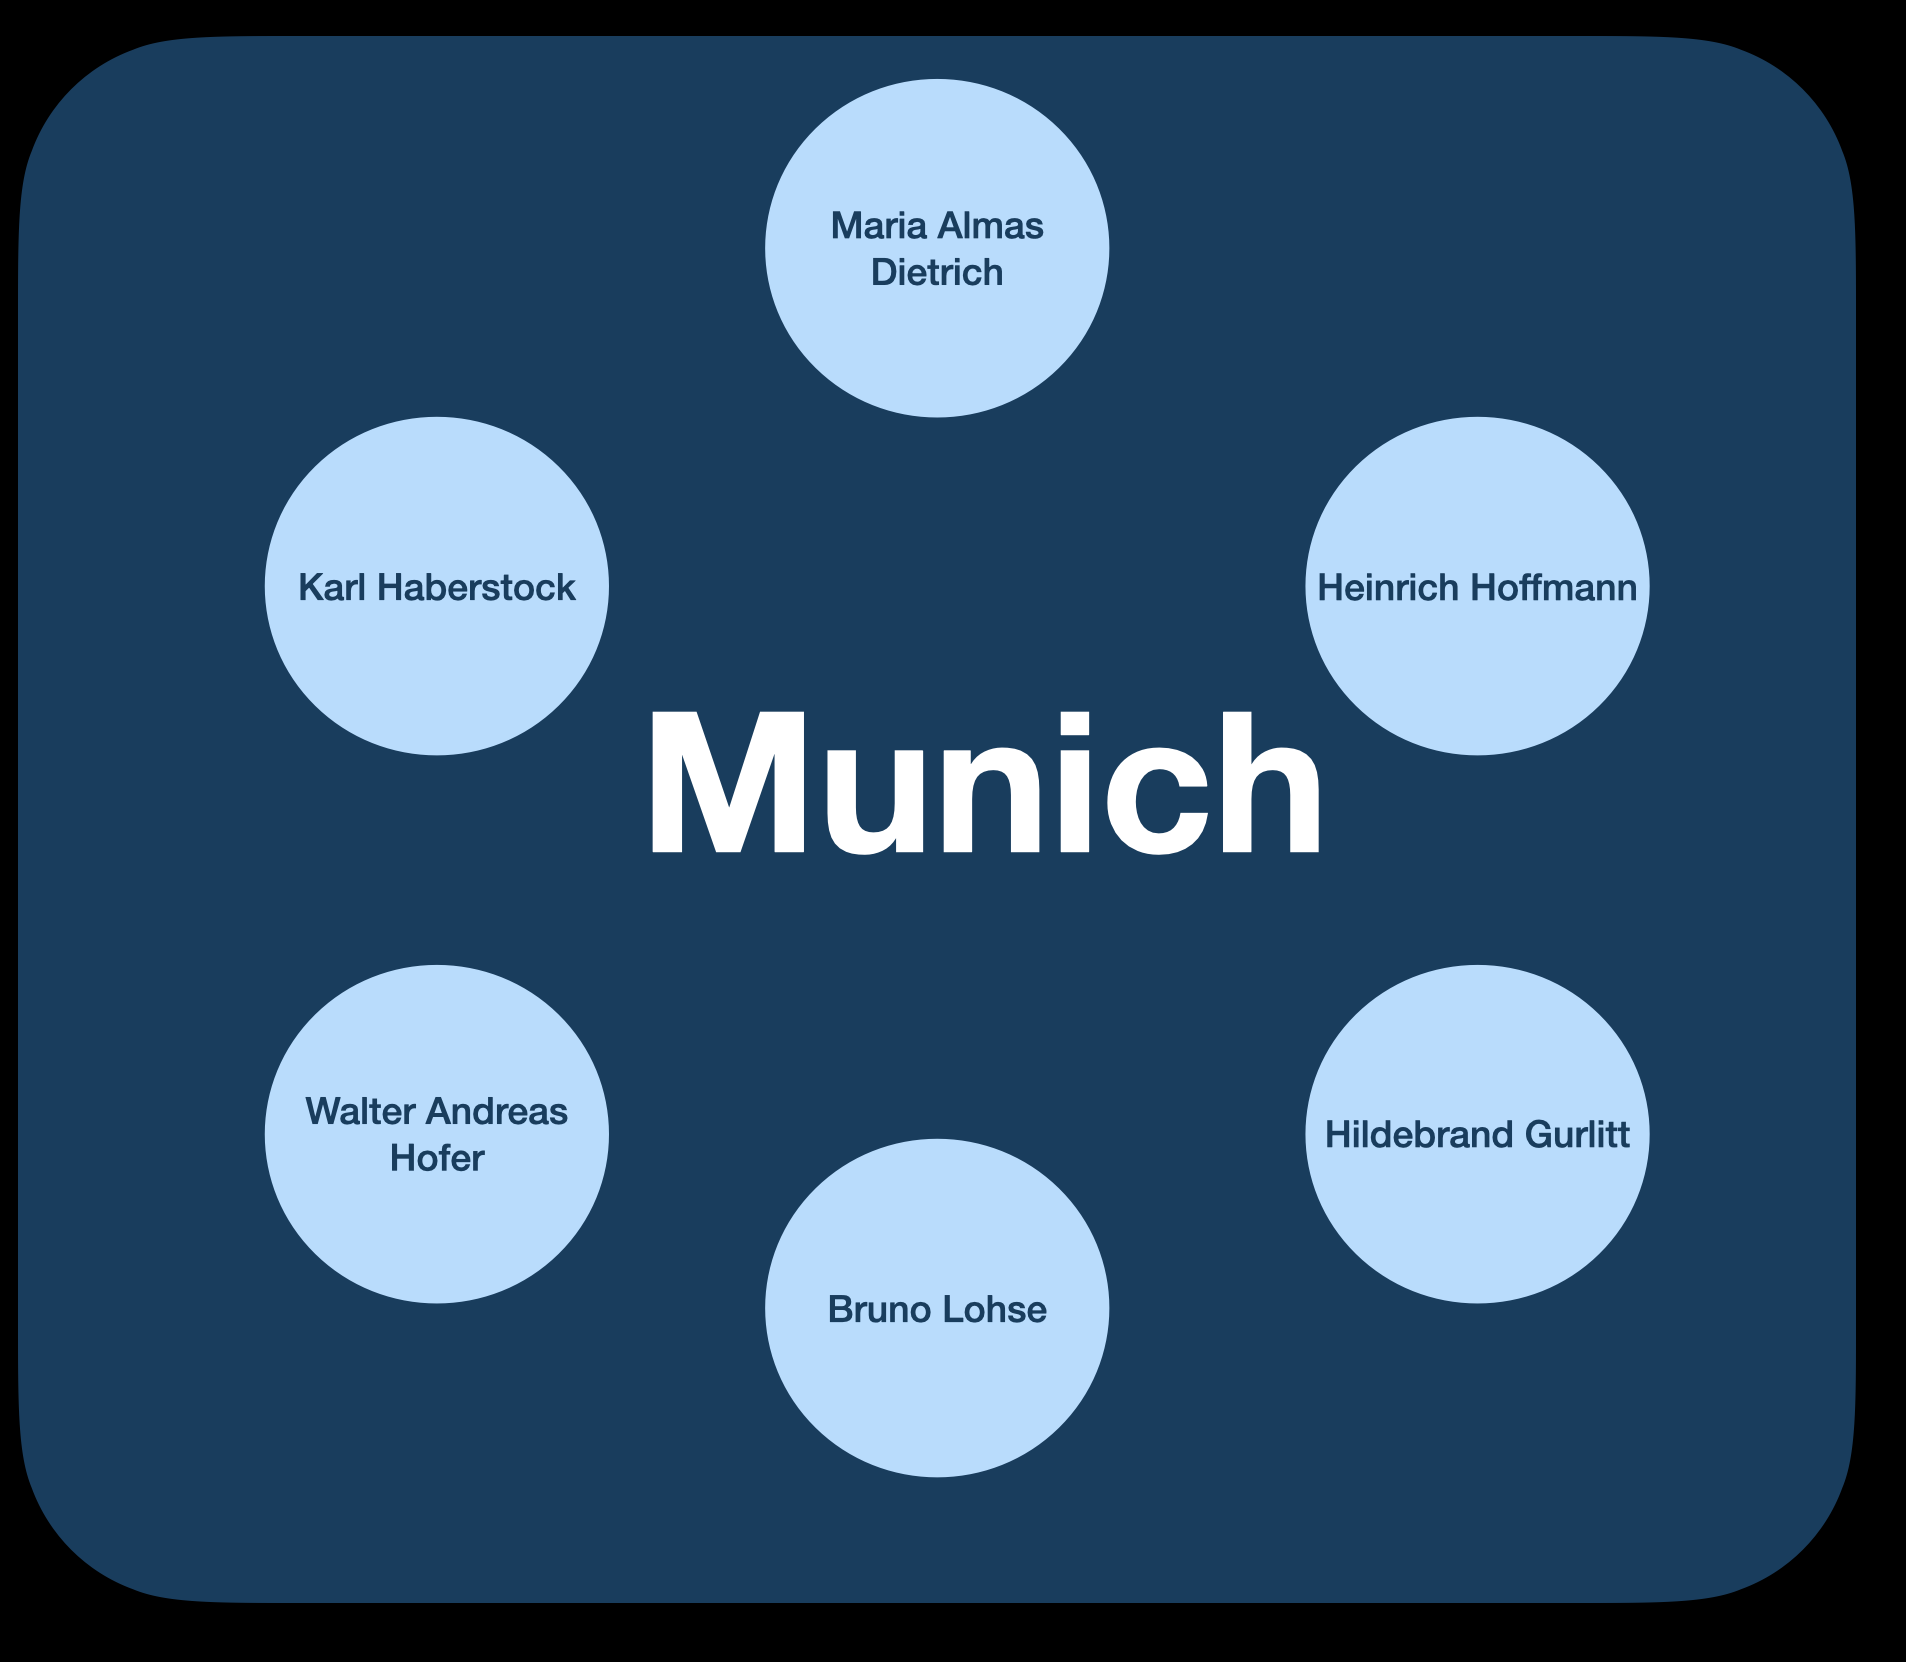 Open Art Data: The Munich Connection